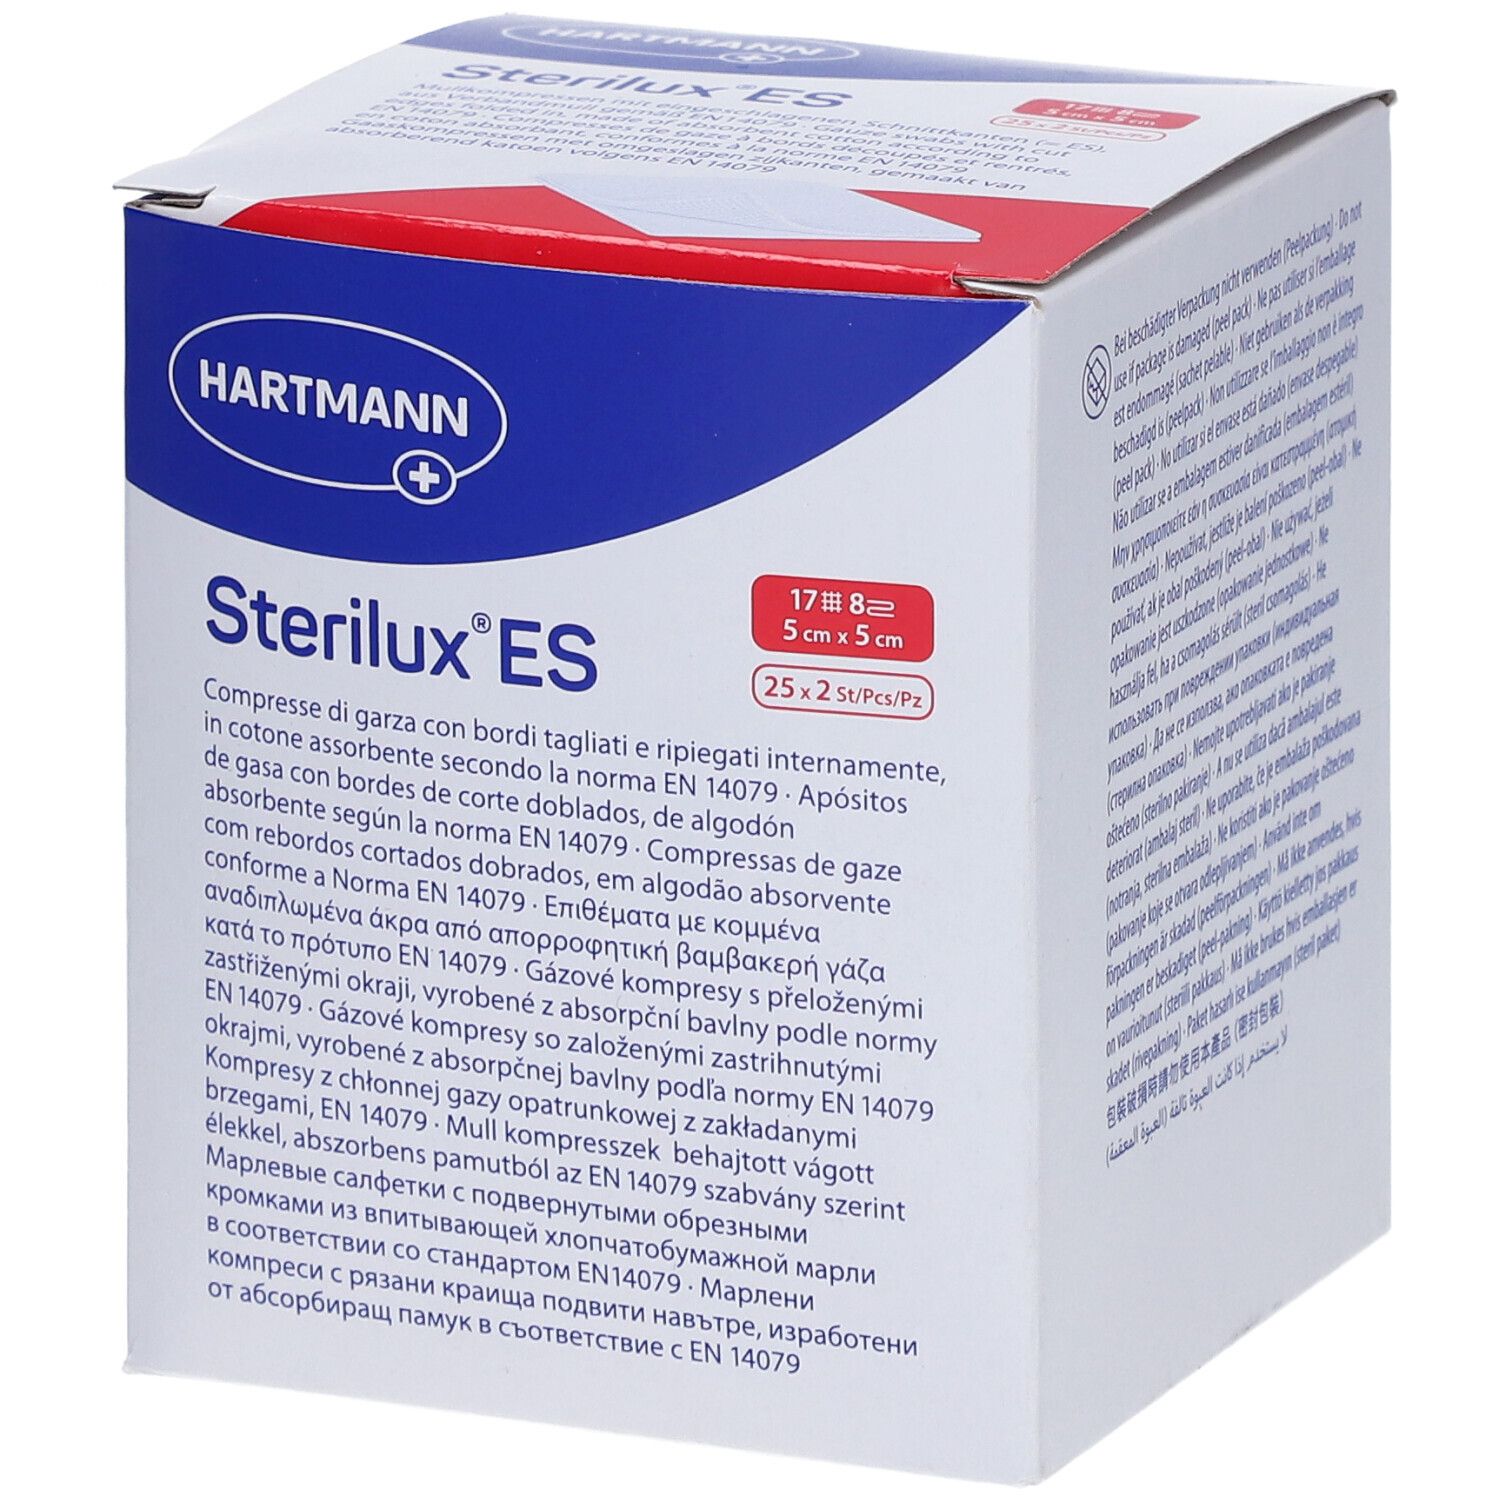 Sterilux® ES Compresse di Garza Sterili 5 cm x 5 cm